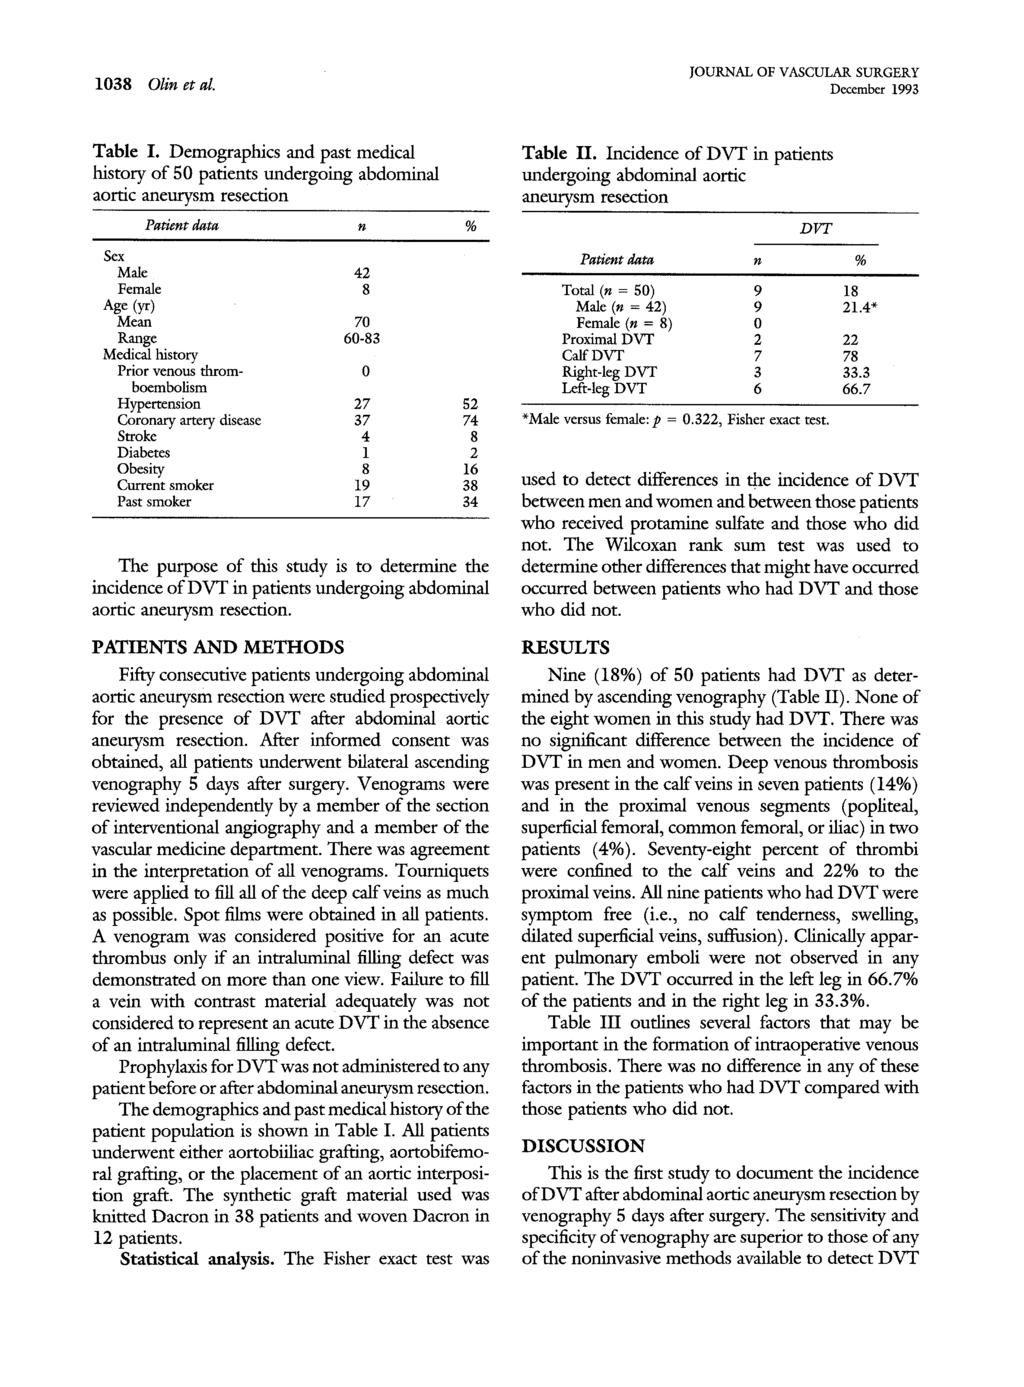 1038 Olin et al. JOURNAL OF VASCULAR SURGERY December 1993 Table I.